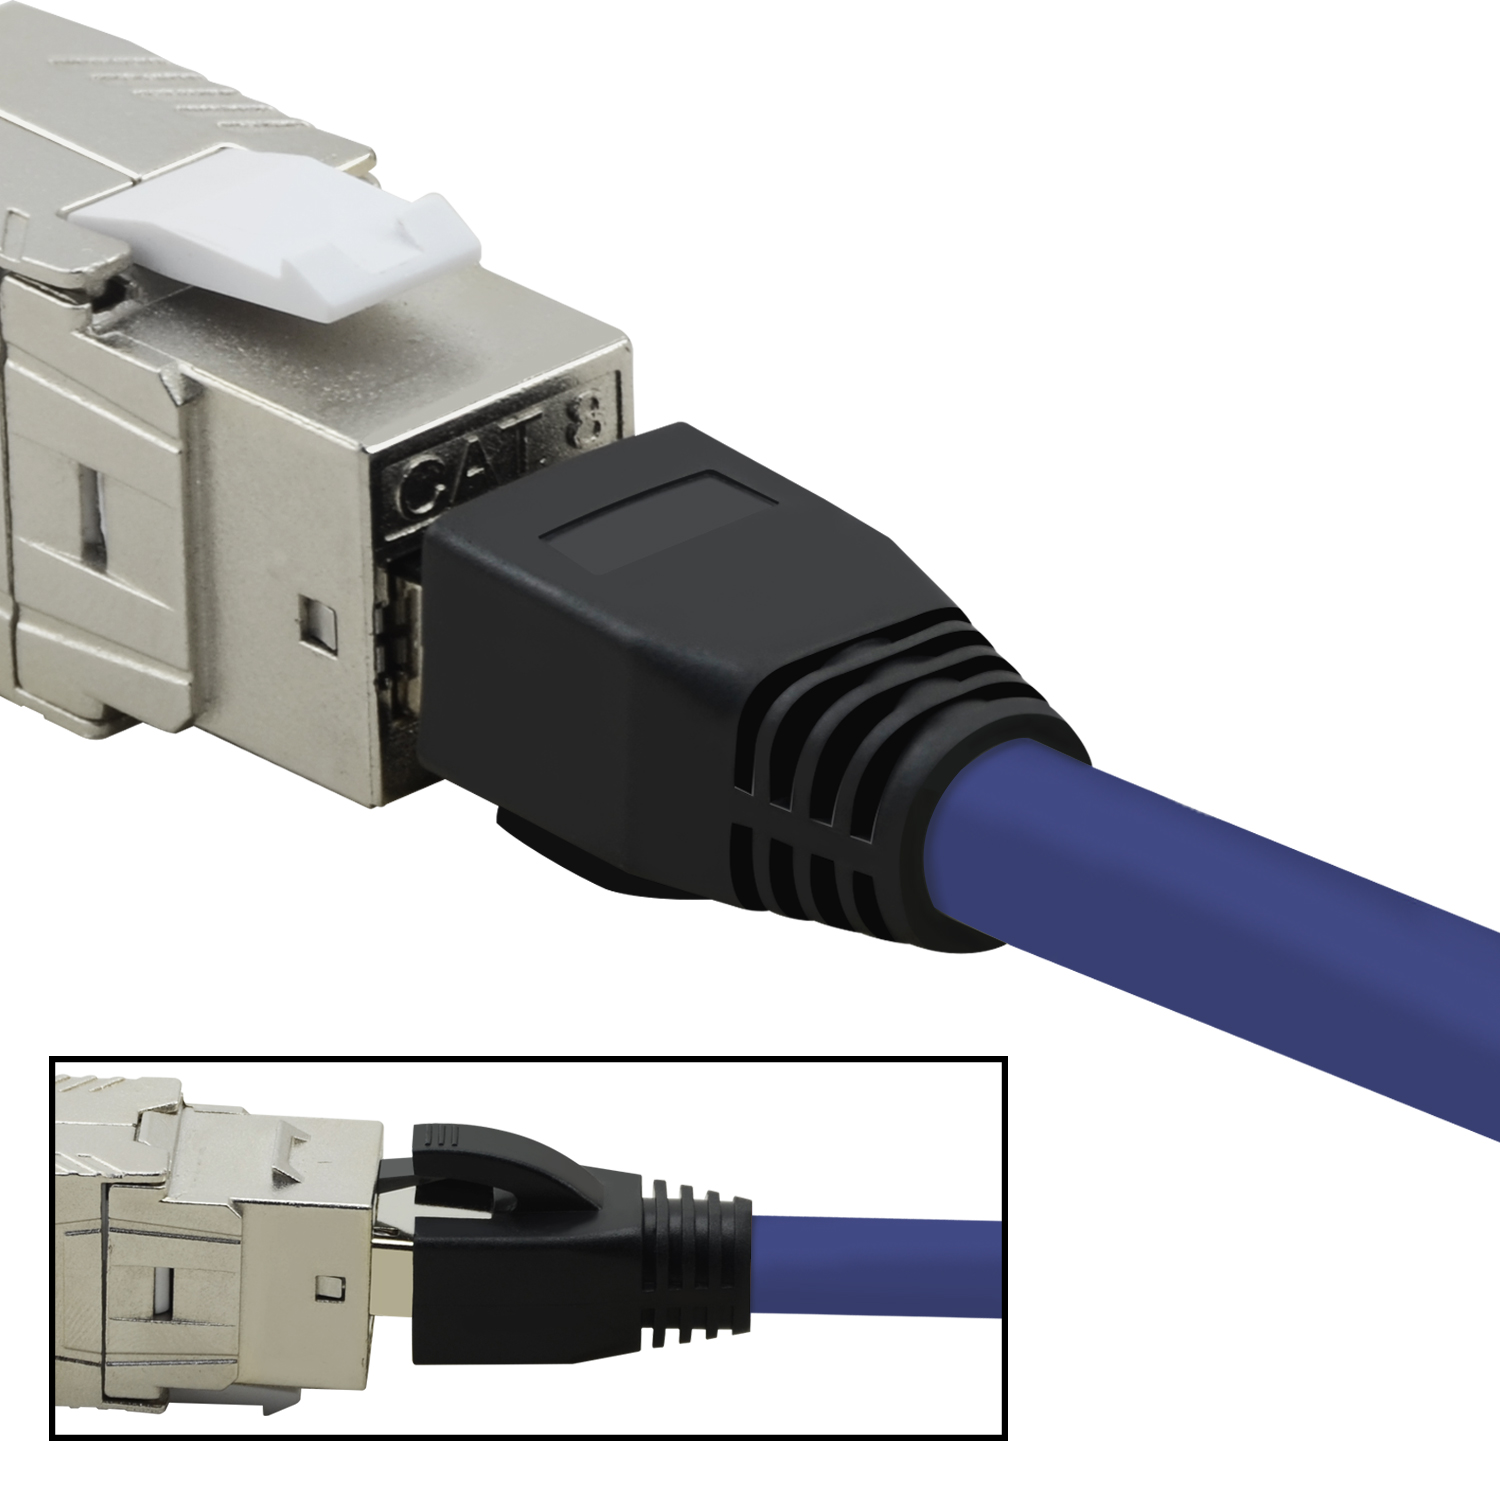 GBit, Netzwerkkabel, / 5er TPFNET 1,5 Pack Netzwerkkabel S/FTP Patchkabel 1,5m 40 m violett,